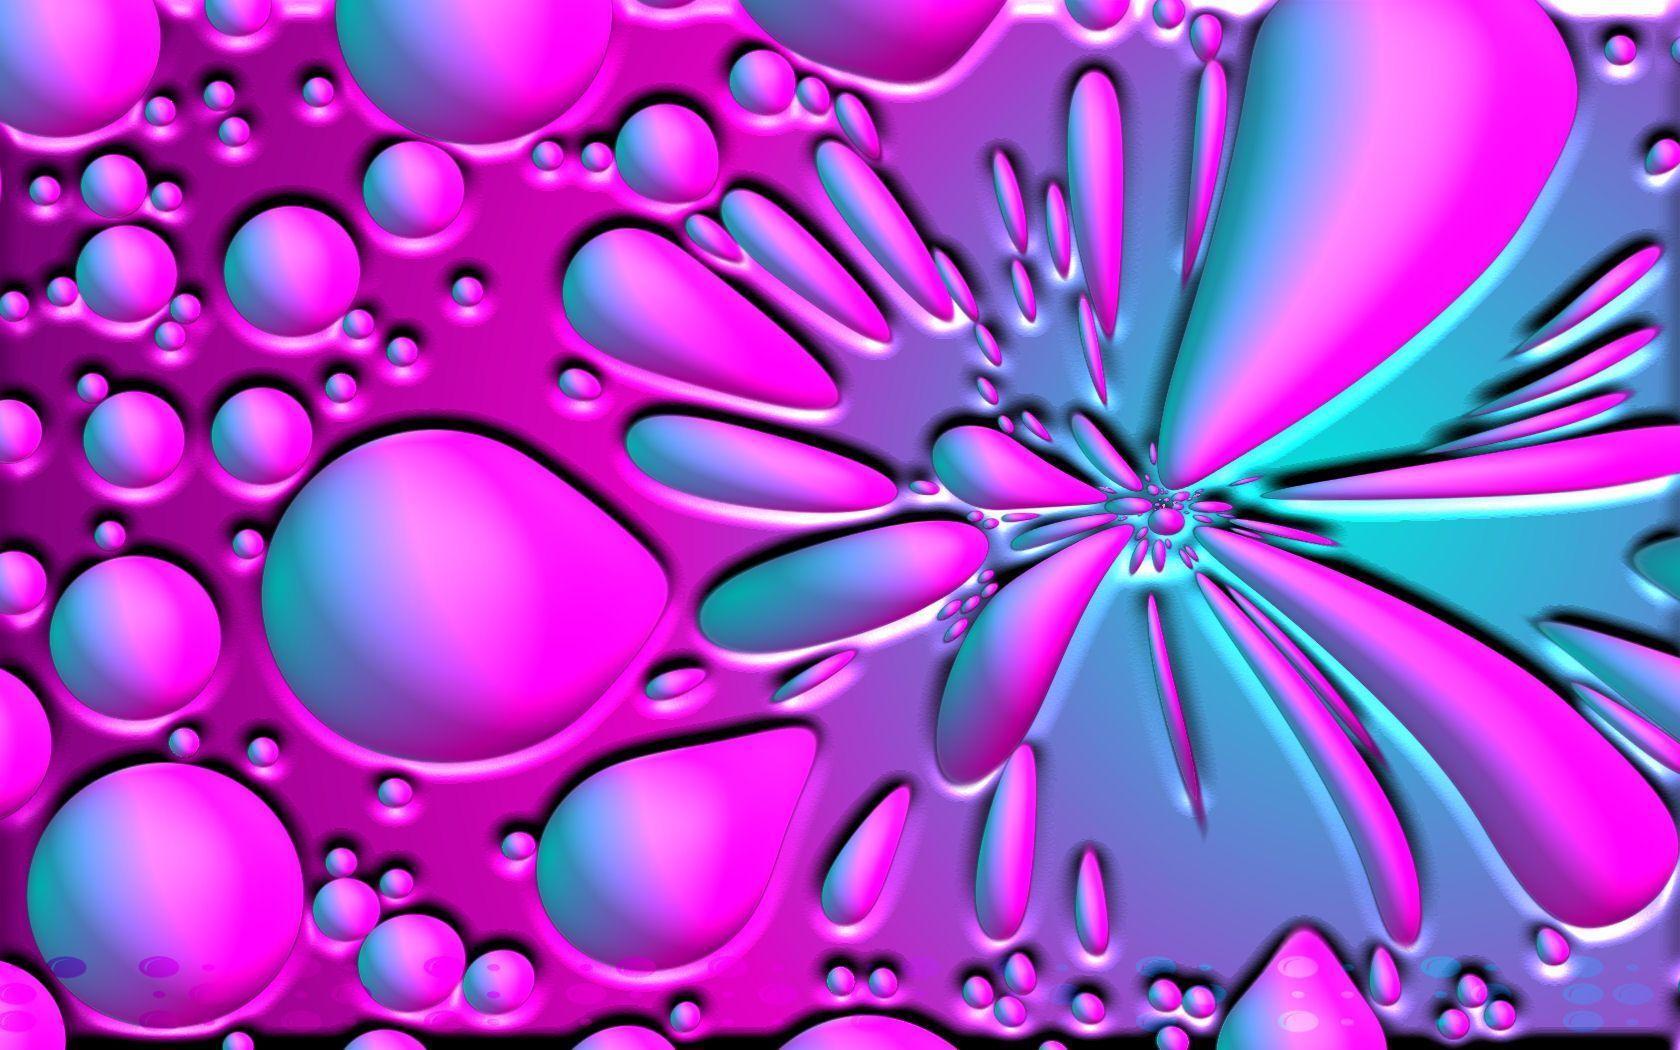 Pink Bubble Wallpaper 5367 HD Wallpaper. pictwalls